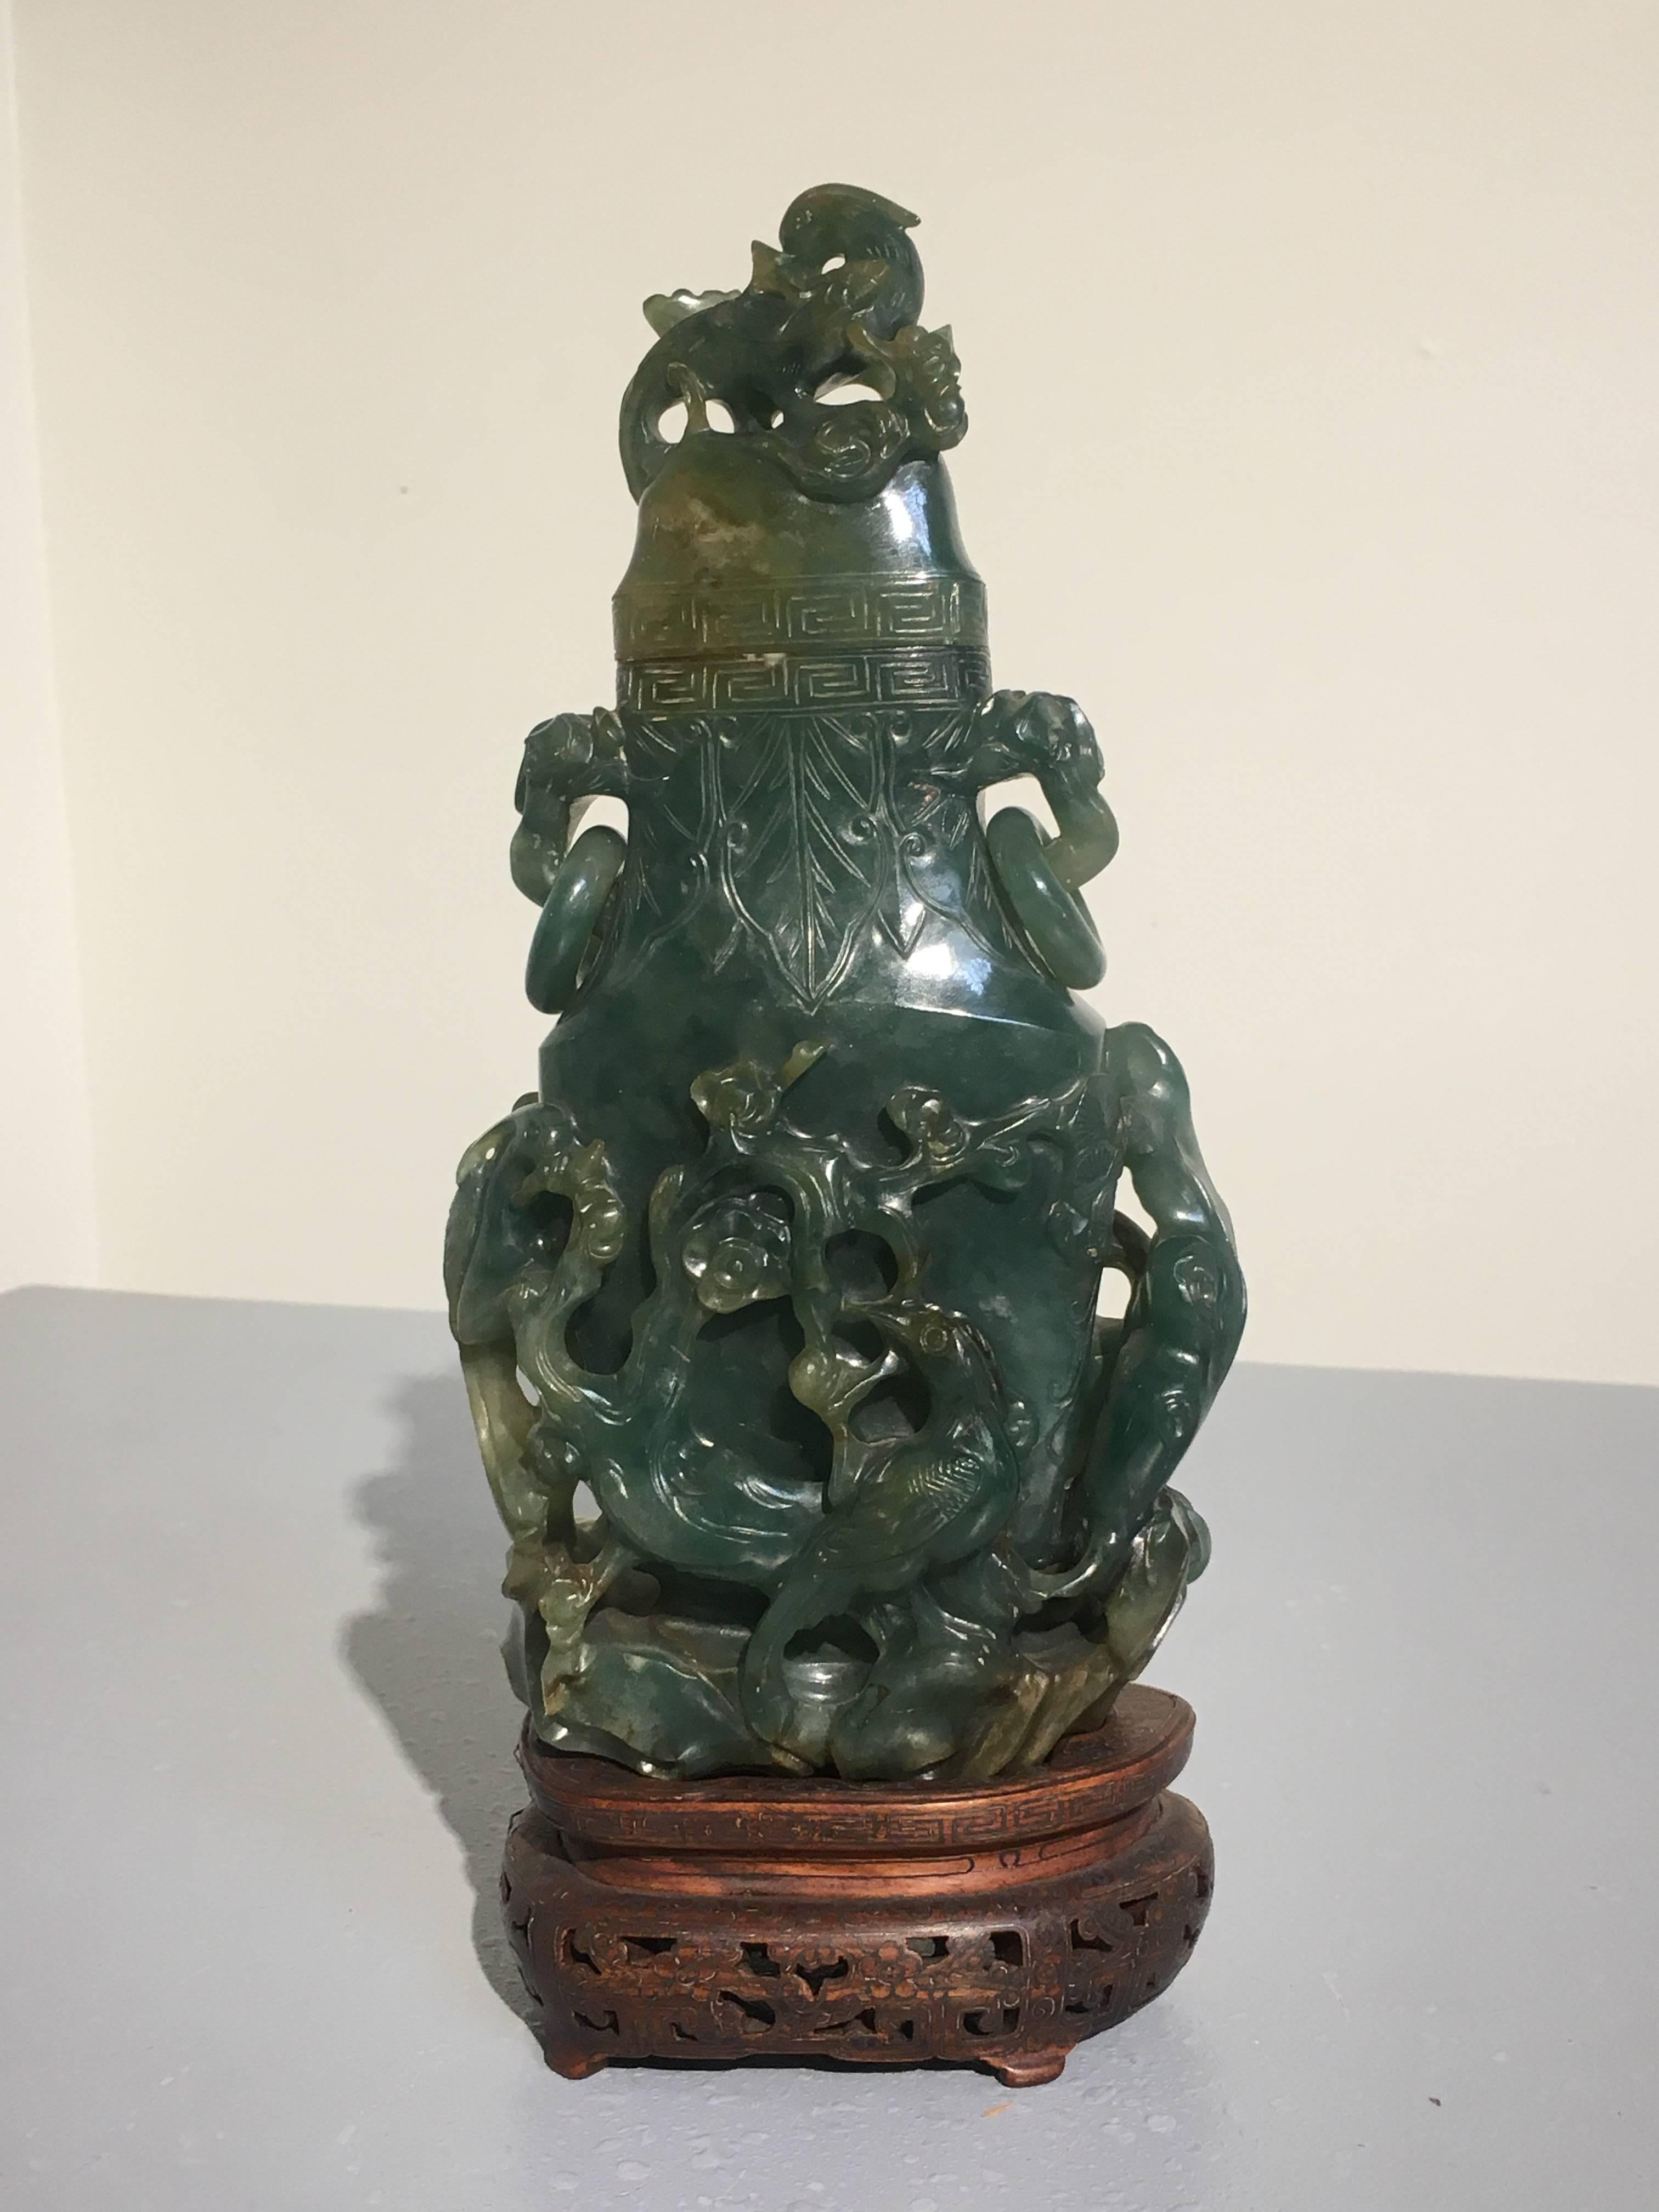 Atemberaubende geschnitzte und durchbrochene chinesische Jadevase, Qing-Dynastie, 19. Jahrhundert. Die Vase ist mit einem Muster aus Vögeln, Blumen und Bäumen verziert, die alle eine bestimmte Bedeutung haben. Die dichte, schwere Jade hat eine